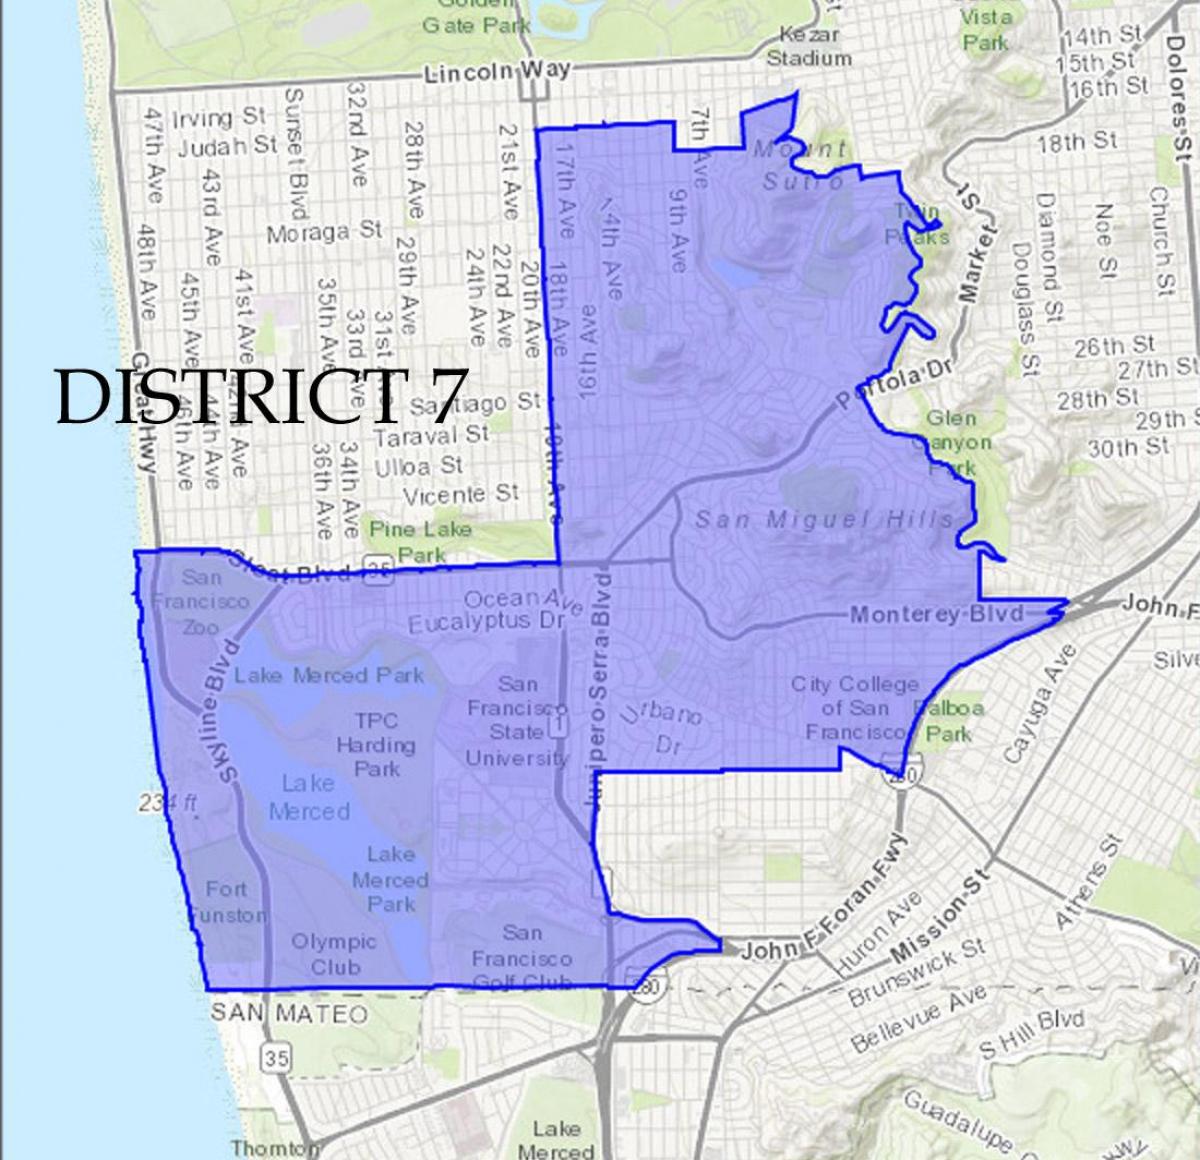 Mapa San Francisco district 7 